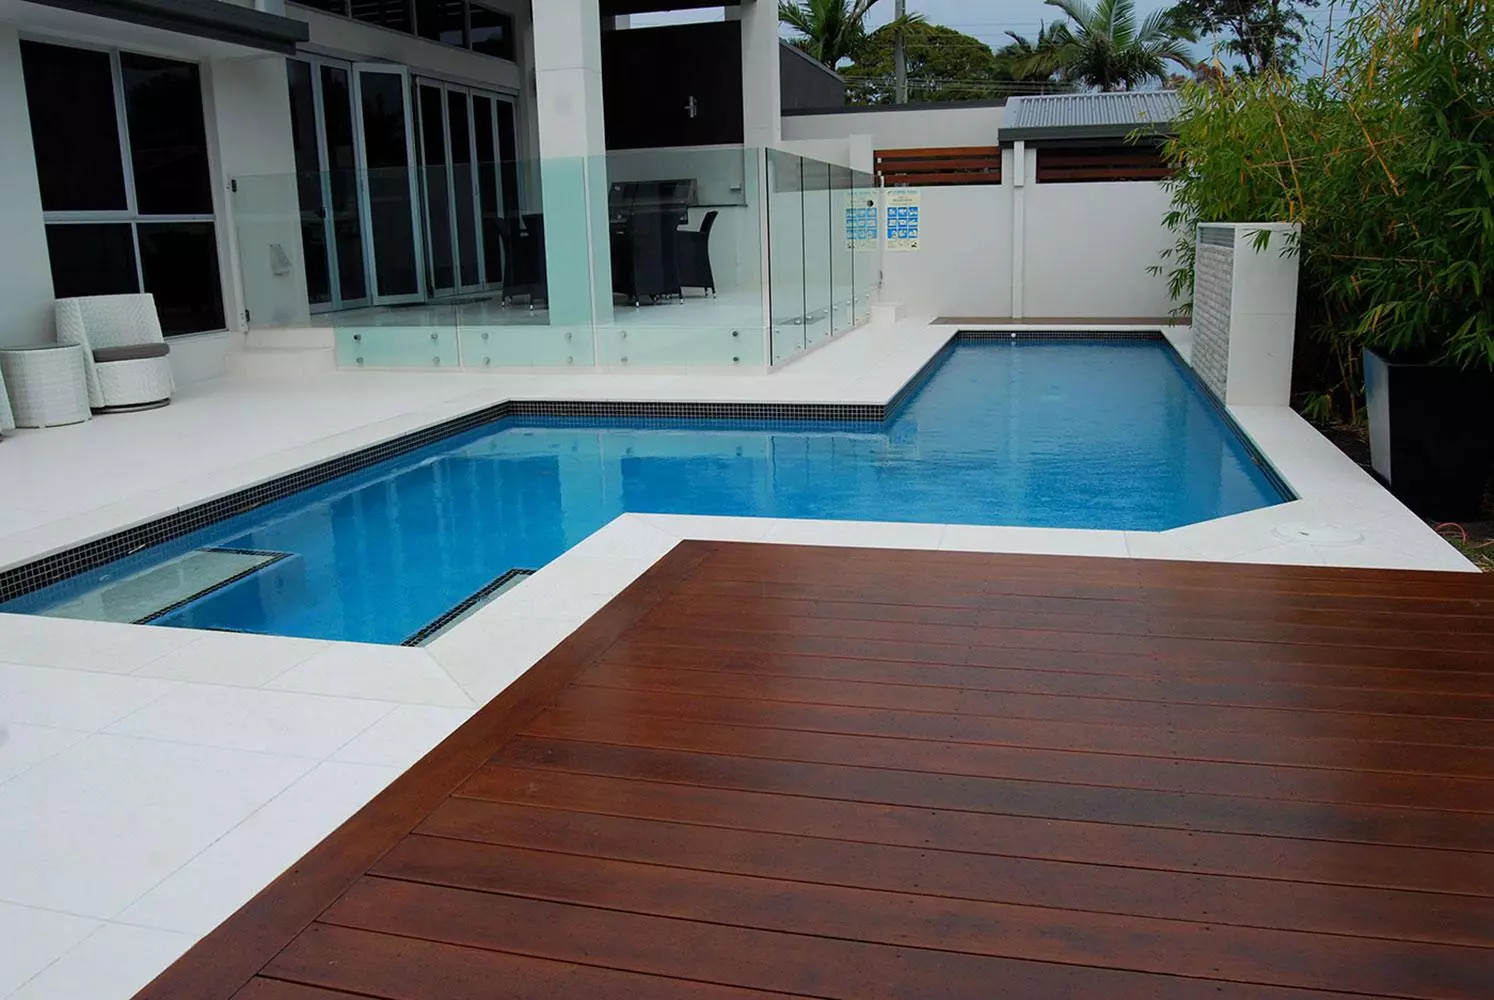 Pool Decking Brisbane Gold Coast, Decking Around Pool